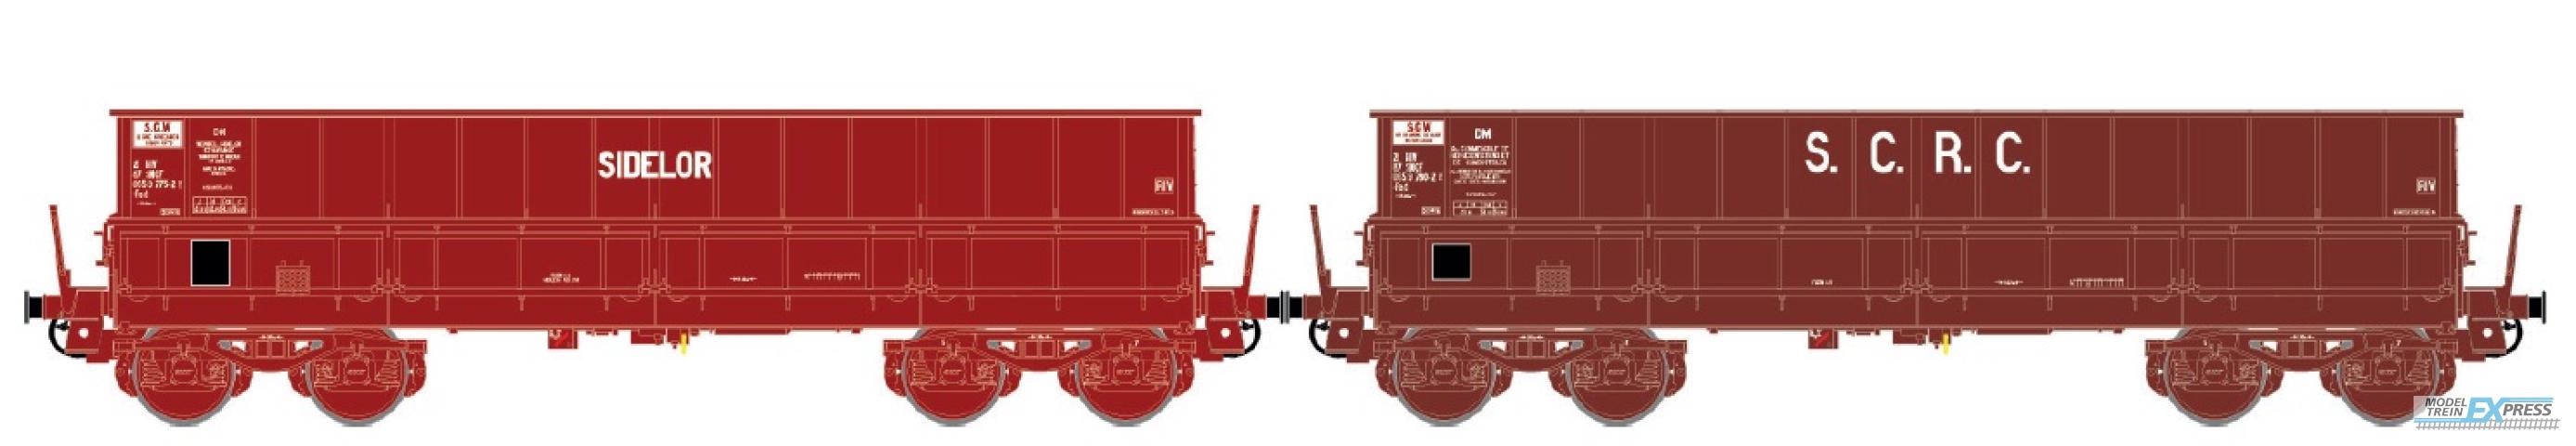 LS Models 31119 Set DM/DM, UIC rood, SCR / SIDELOR  /  Ep. IV  /  SNCF  /  HO  /  DC  /  2 P.